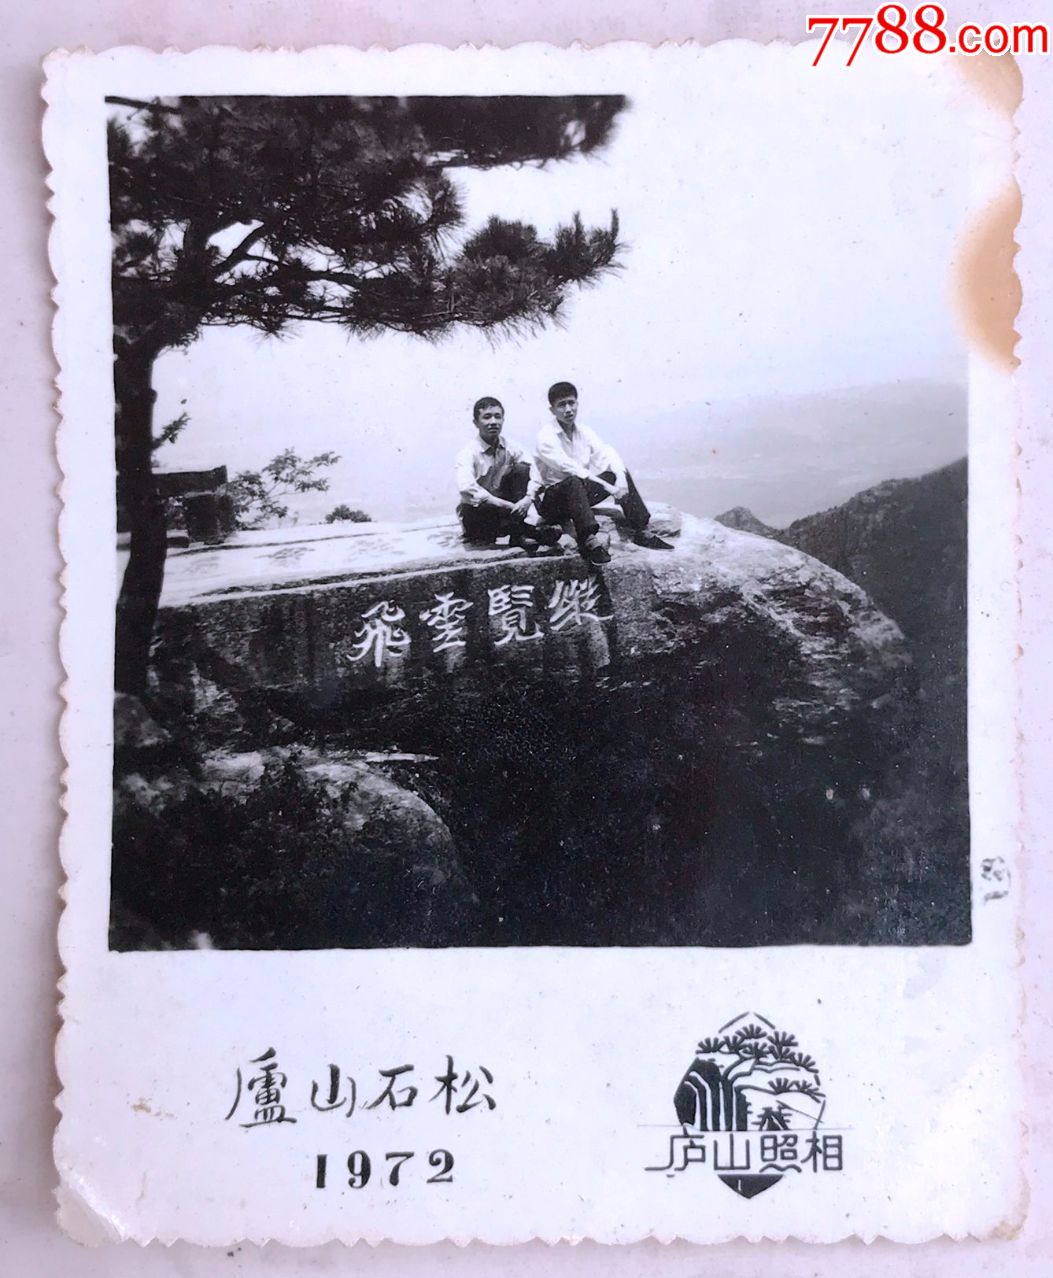 1972年男子在庐山合影照